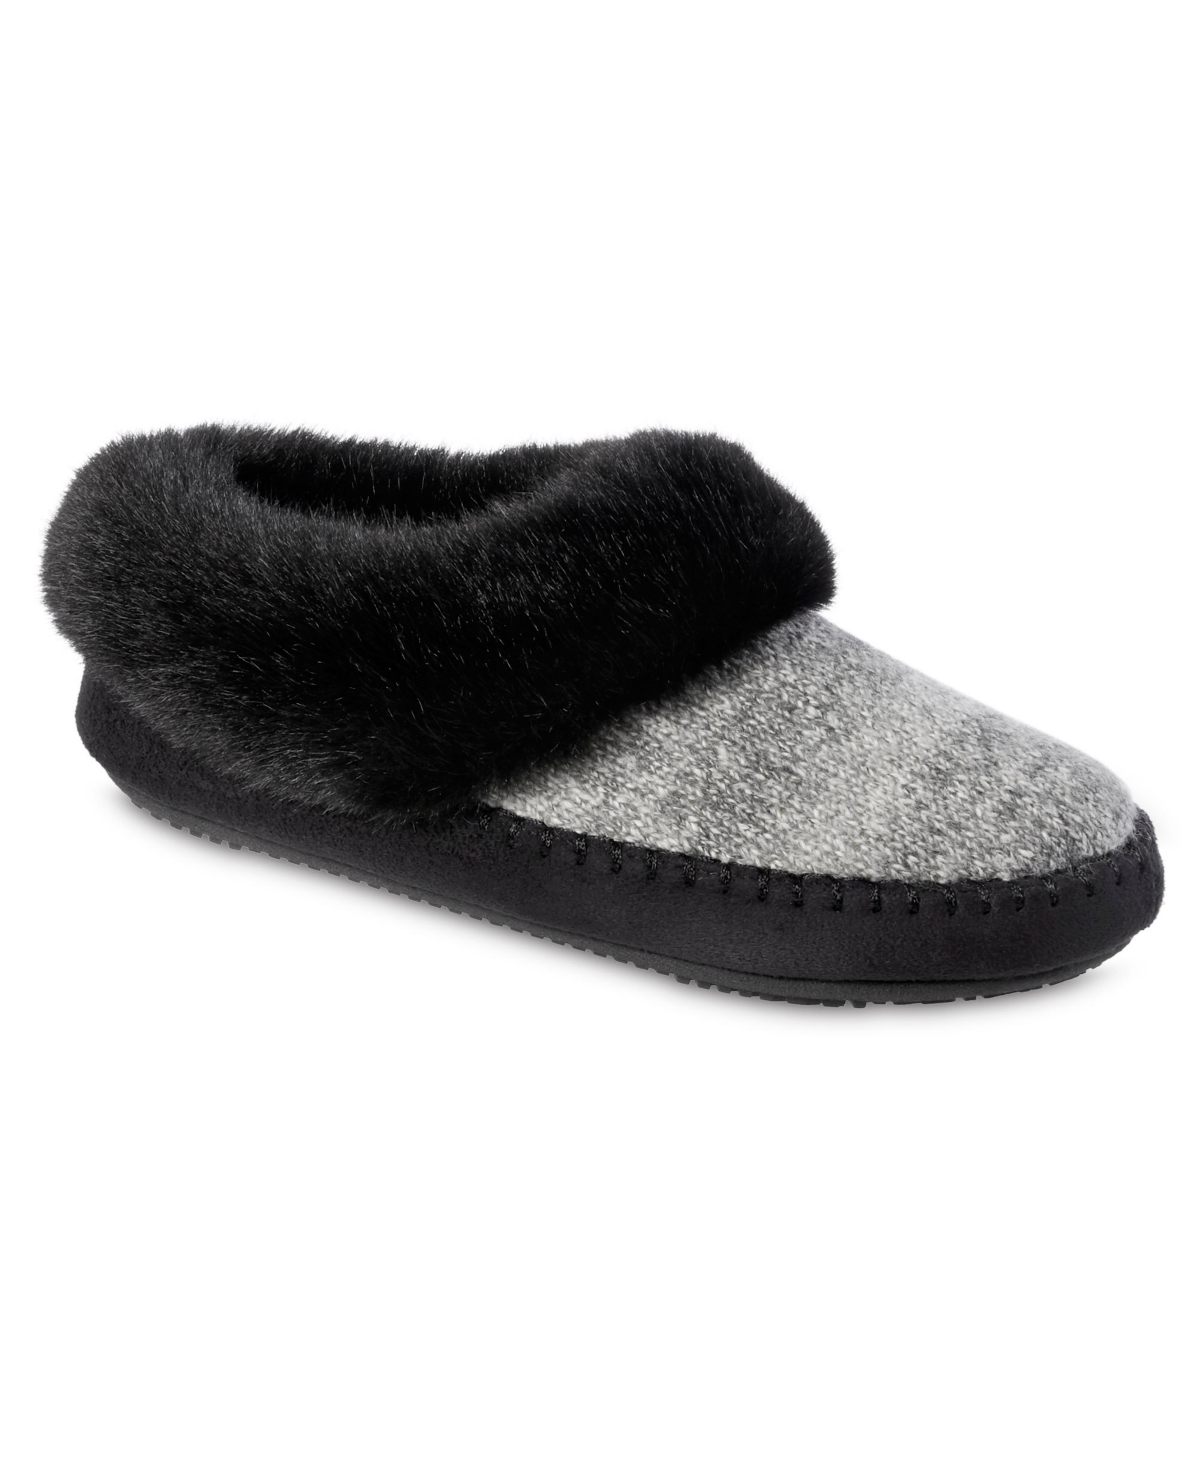 Women's Memory Foam Marni Knit Bootie Comfort Slippers - Black